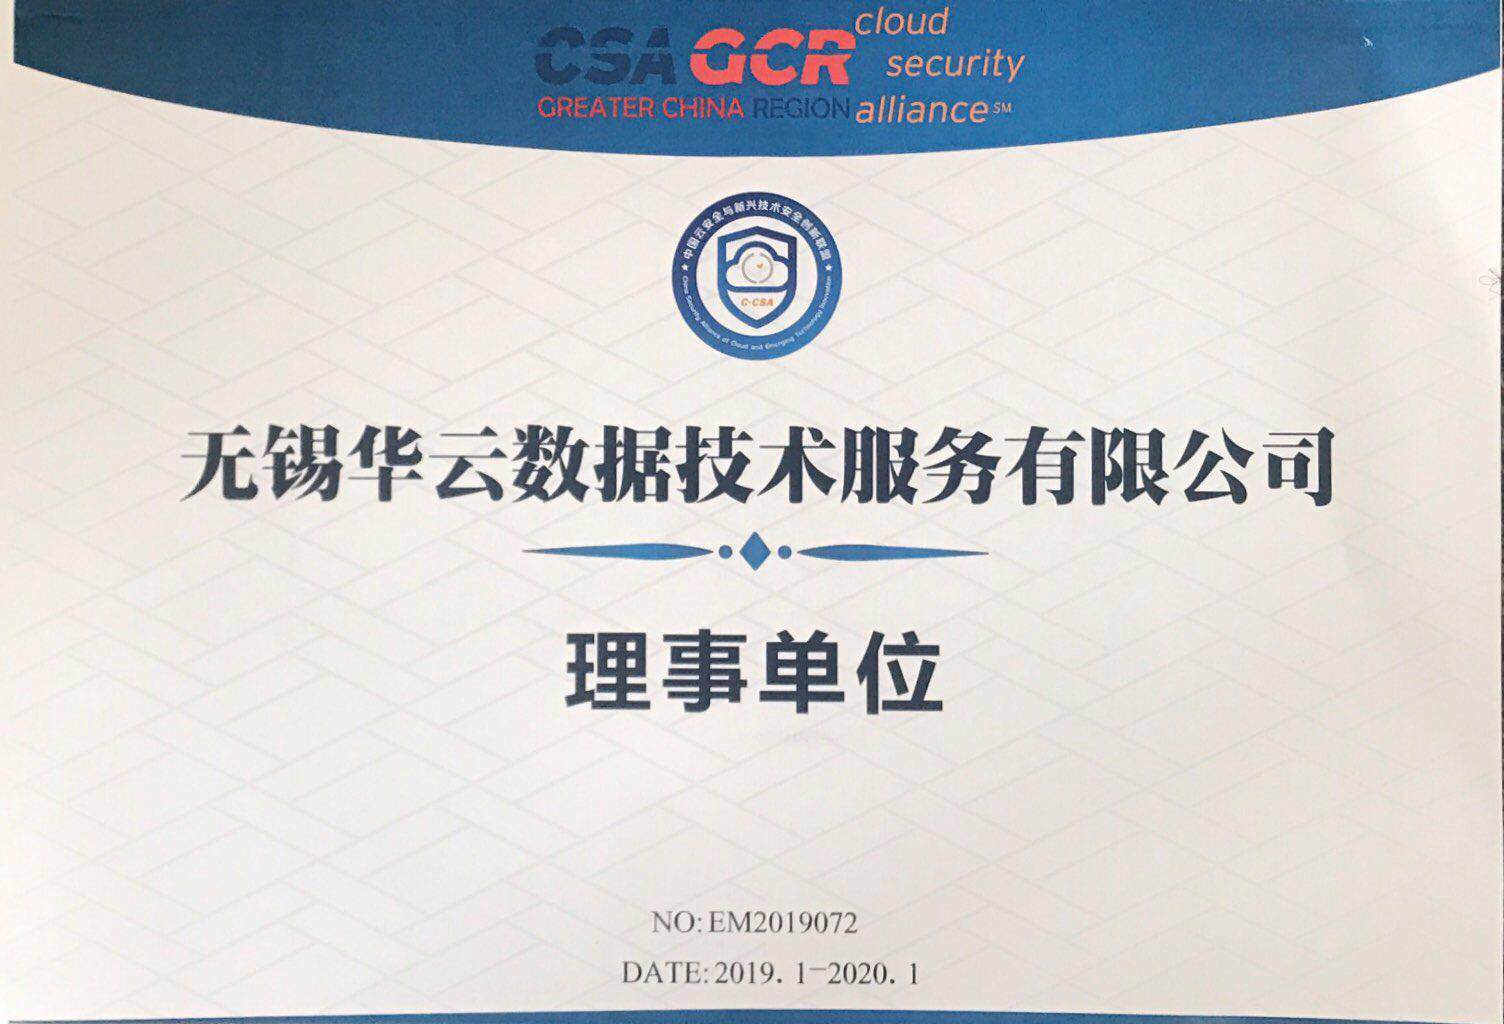 中国云安全与新兴技术安全创新联盟理事单位